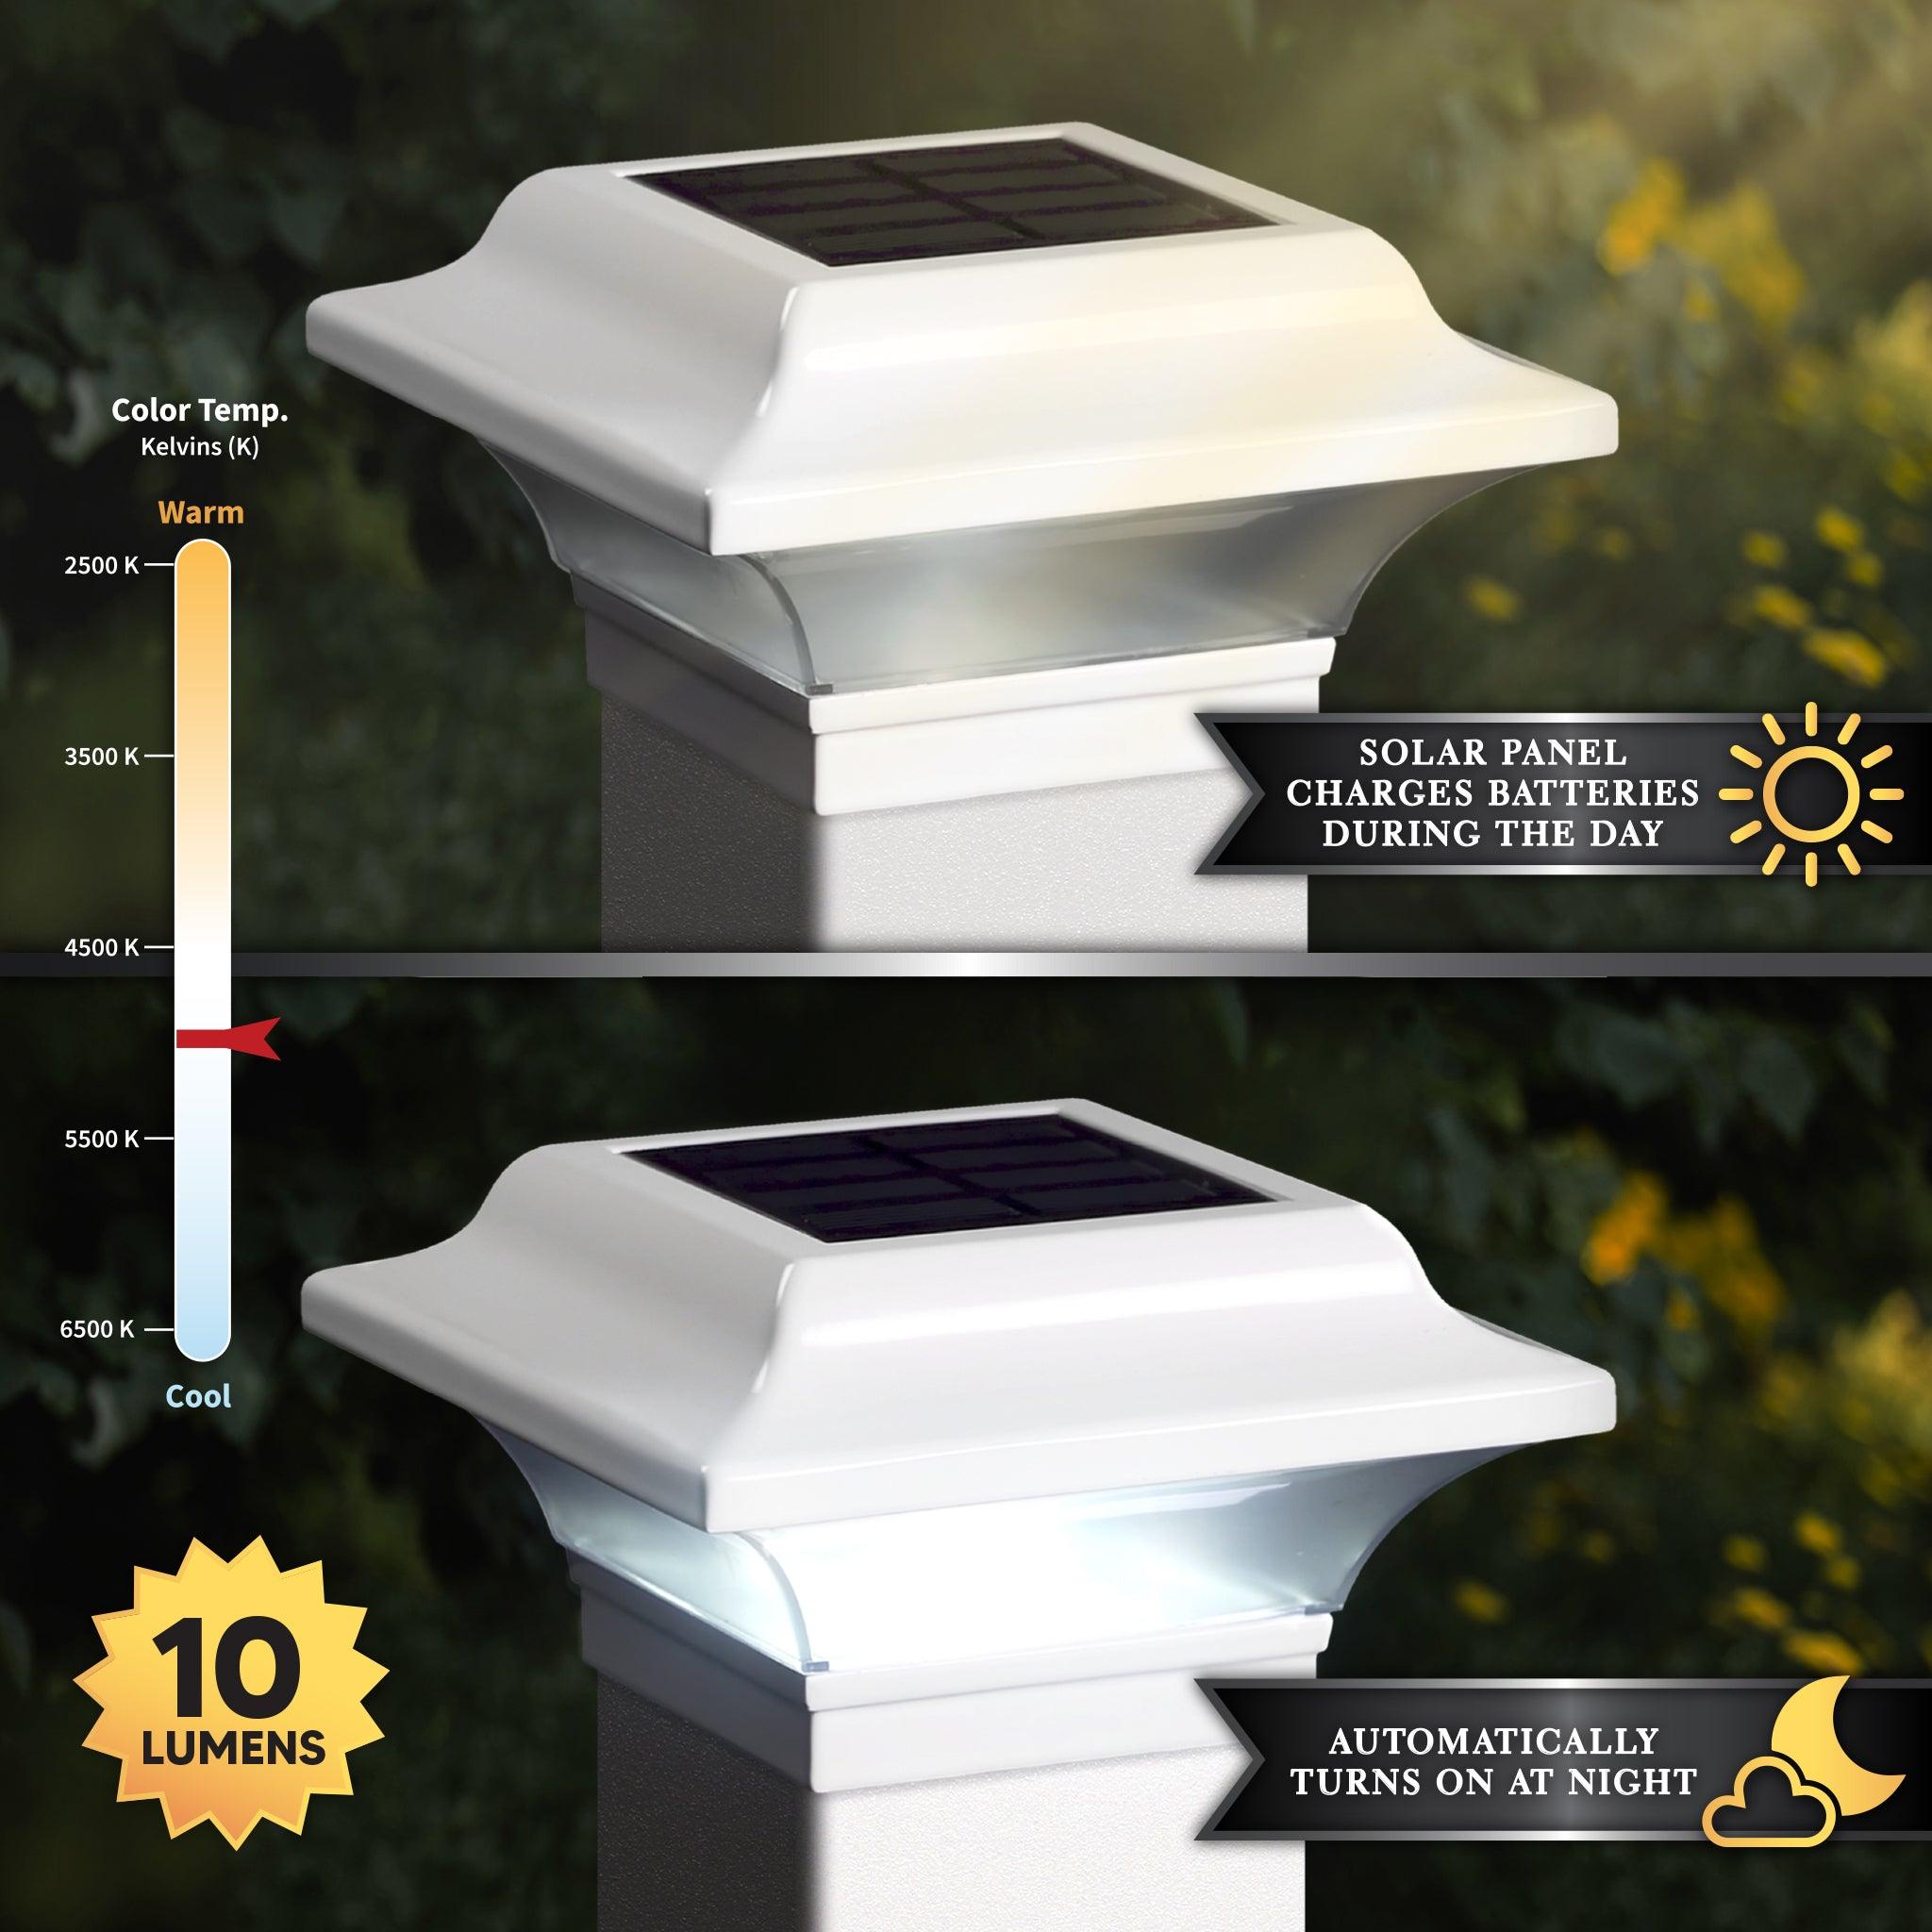 Imperial Solar Post Cap - White With 3"x3" Adaptor - Classy Caps Mfg. Inc.